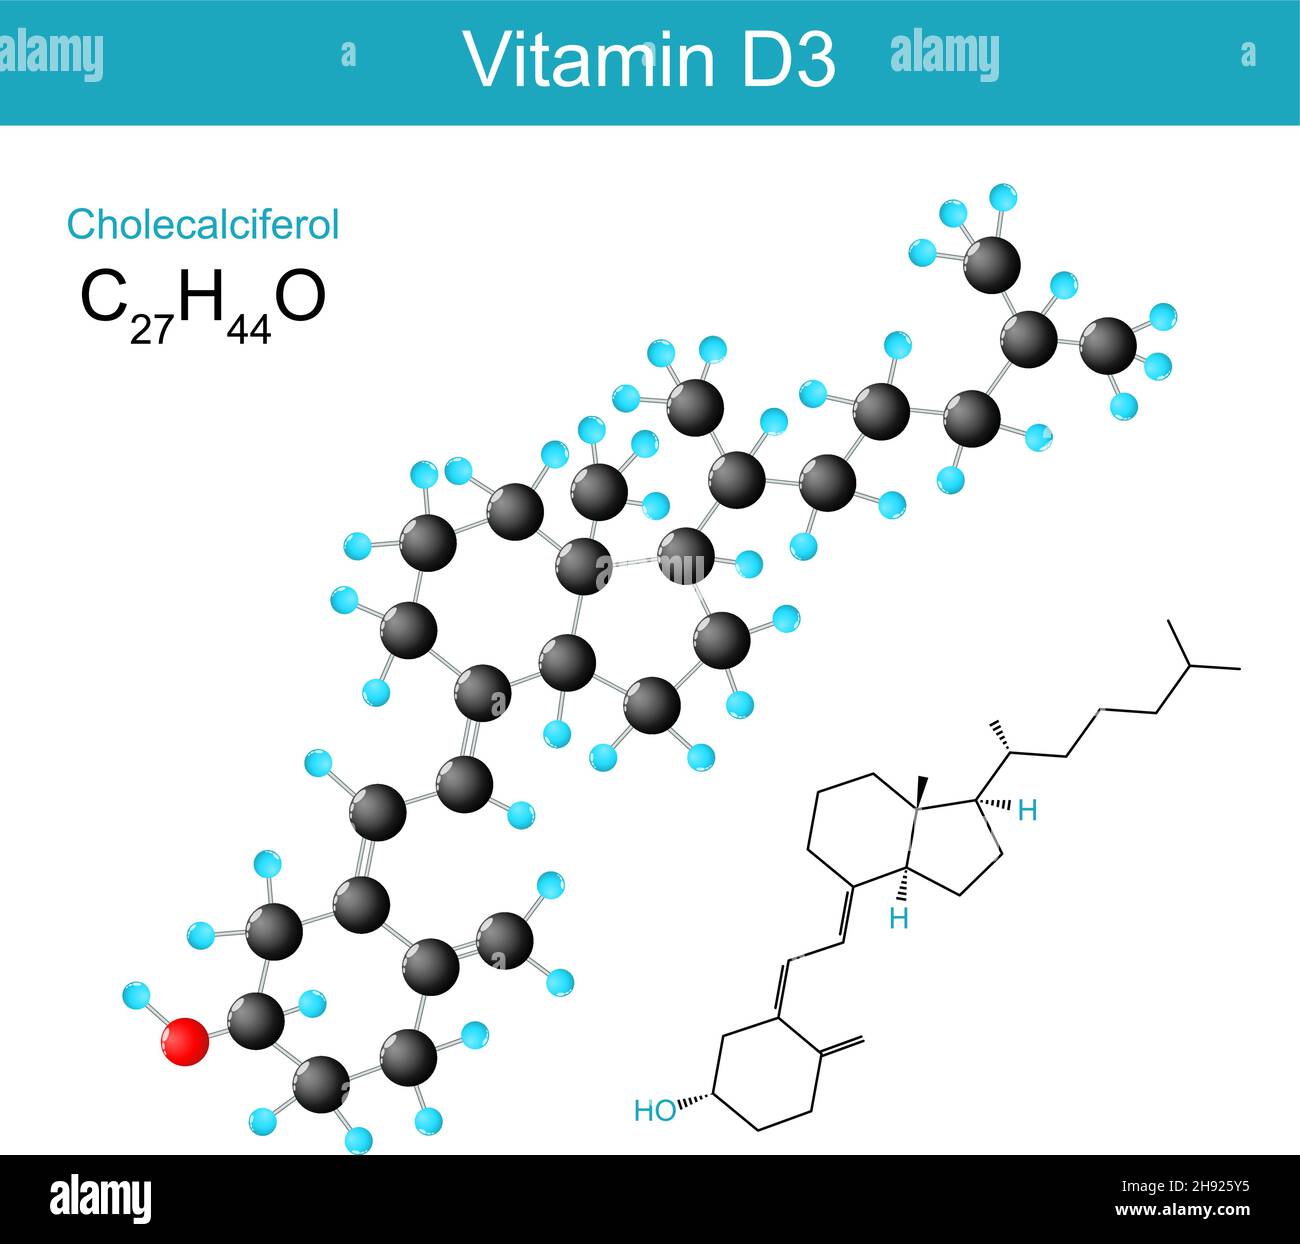 Vitamin D3. Cholecalciferol molekularchemische Strukturformel und Modell einer Art von Vitamin D. Vektordarstellung Stock Vektor